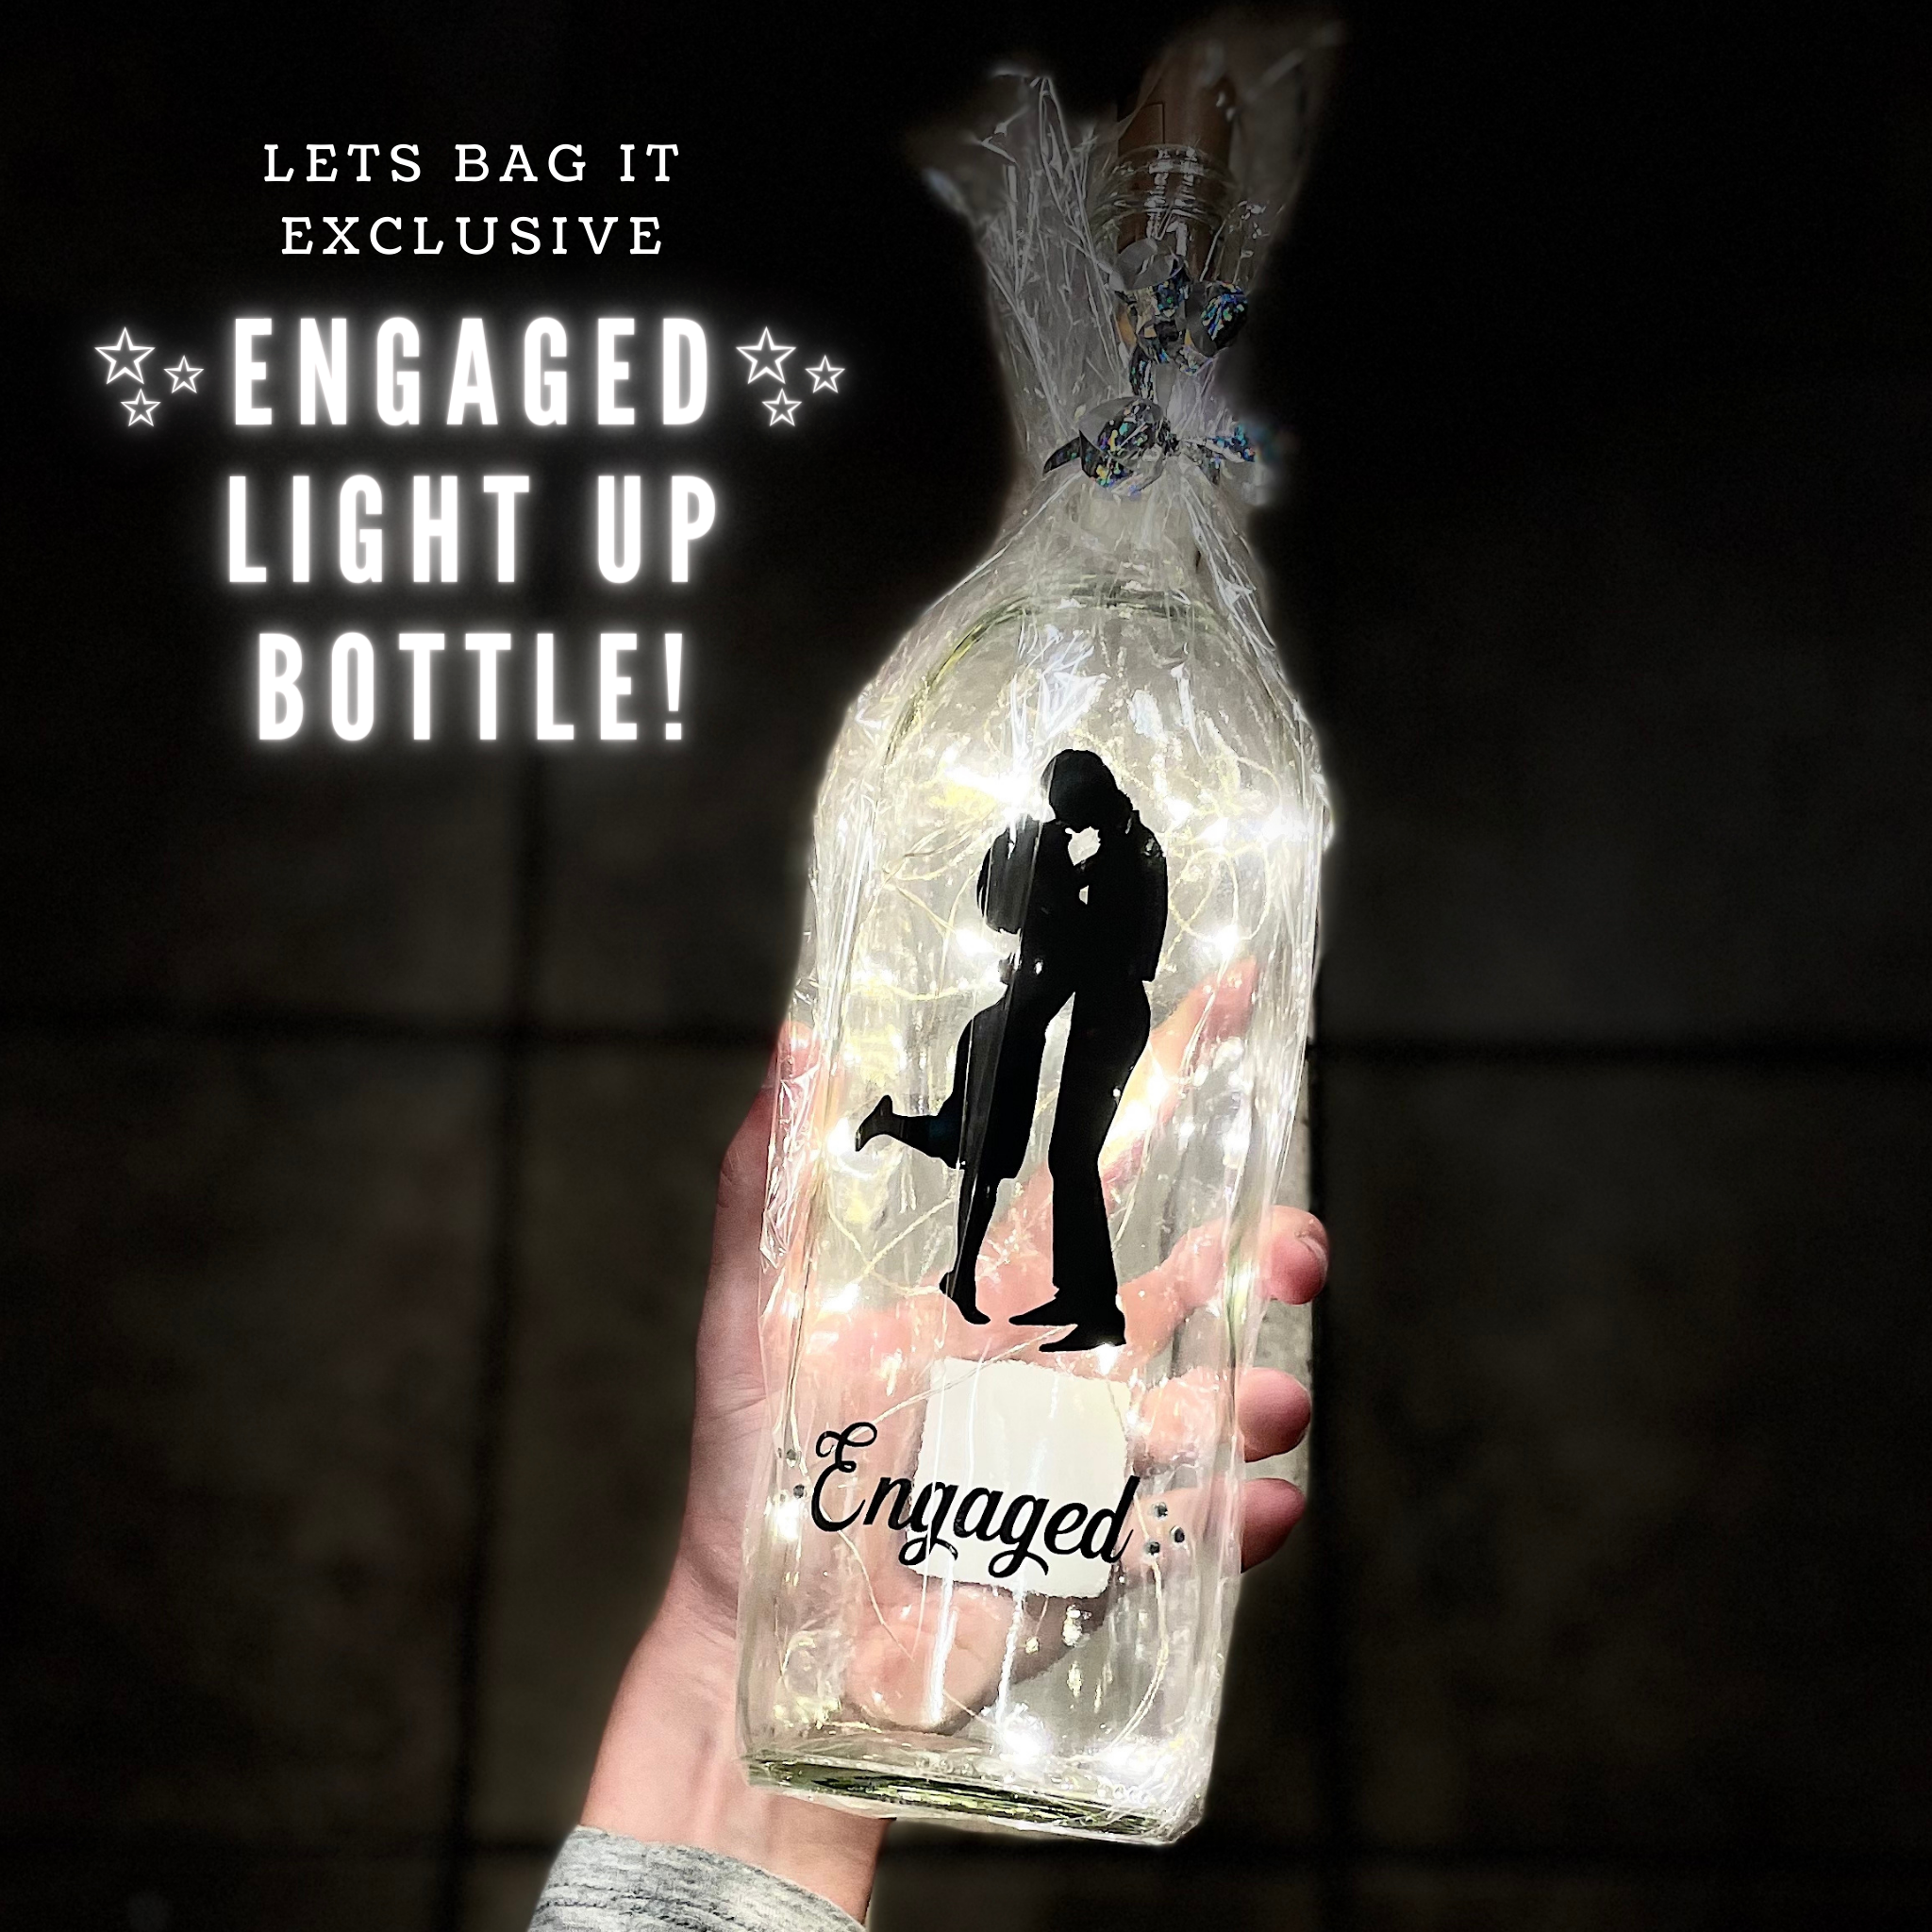 Engaged Light Up Bottle!